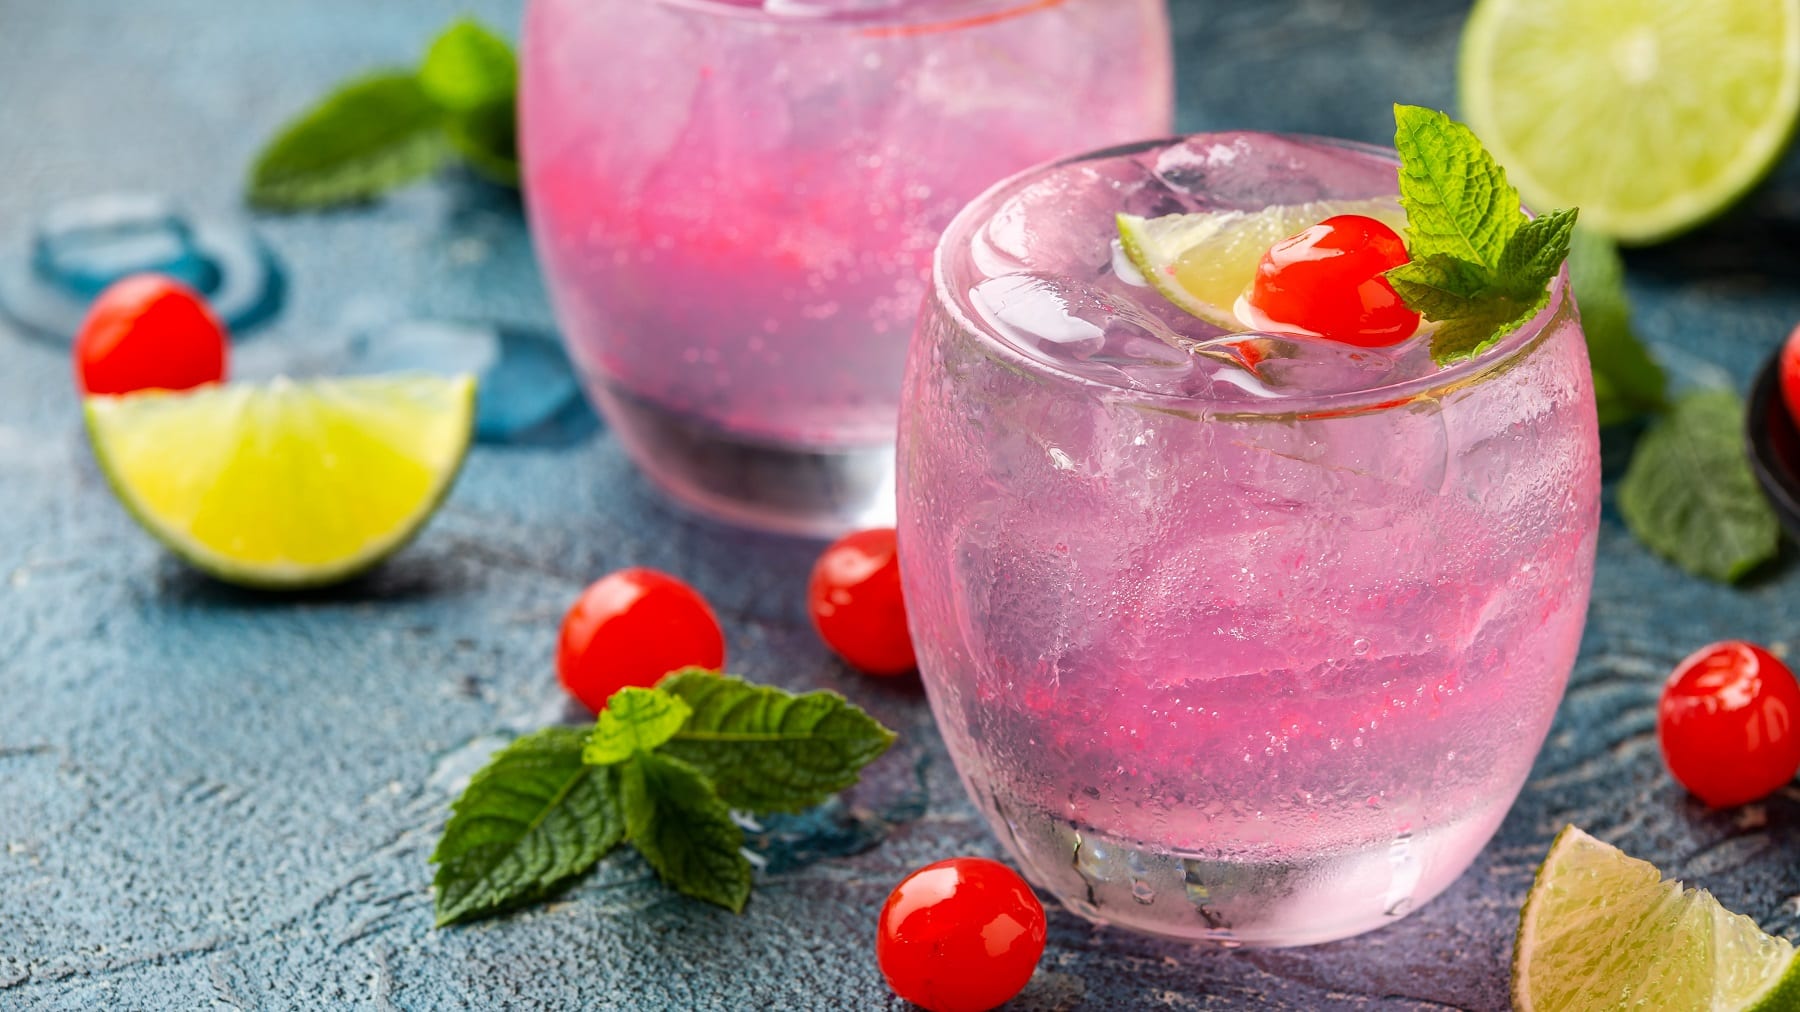 Zwei Gläser mit dem Pink Cherry Gin auf dunkelblauem Tisch mit Limettenspalten und Maraschino-Kirschen dekoriert. Alles seitlich fotografiert.